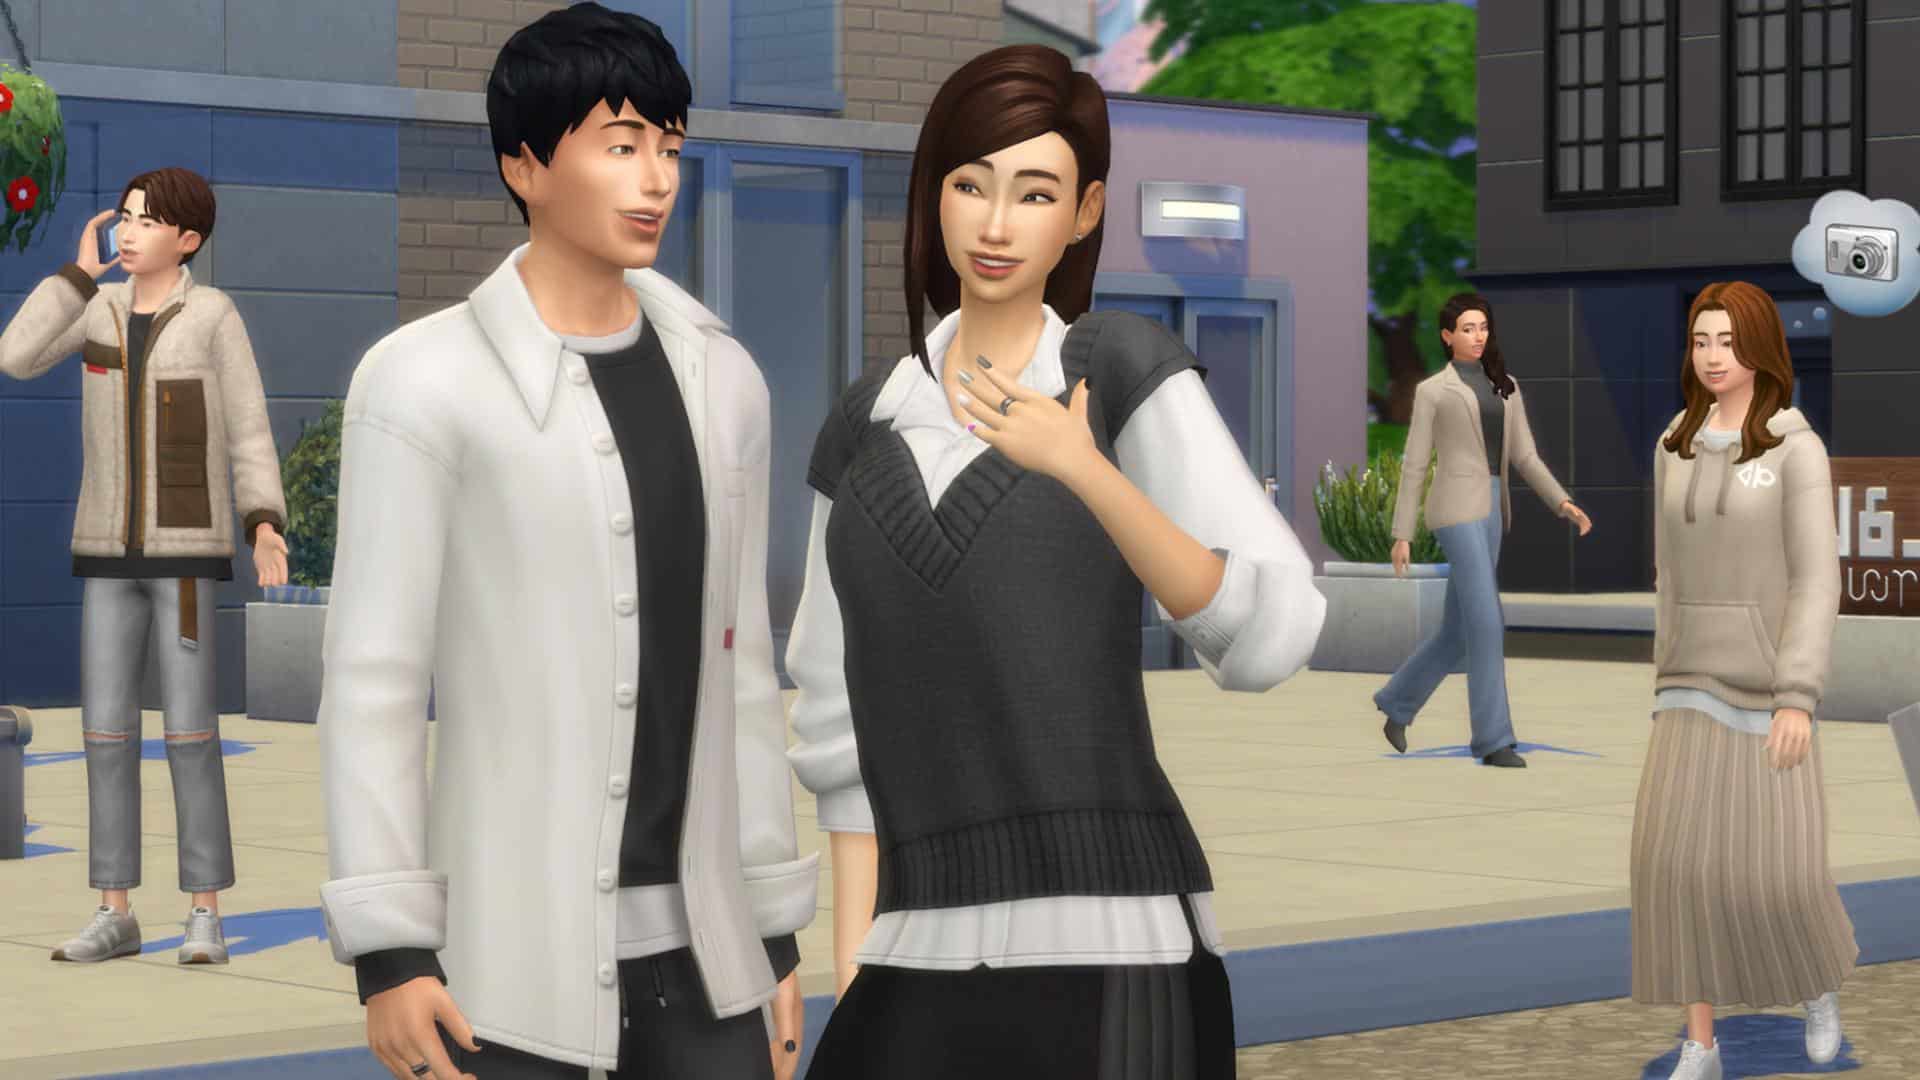 The Sims 4 agrega incesto accidentalmente en última actualización